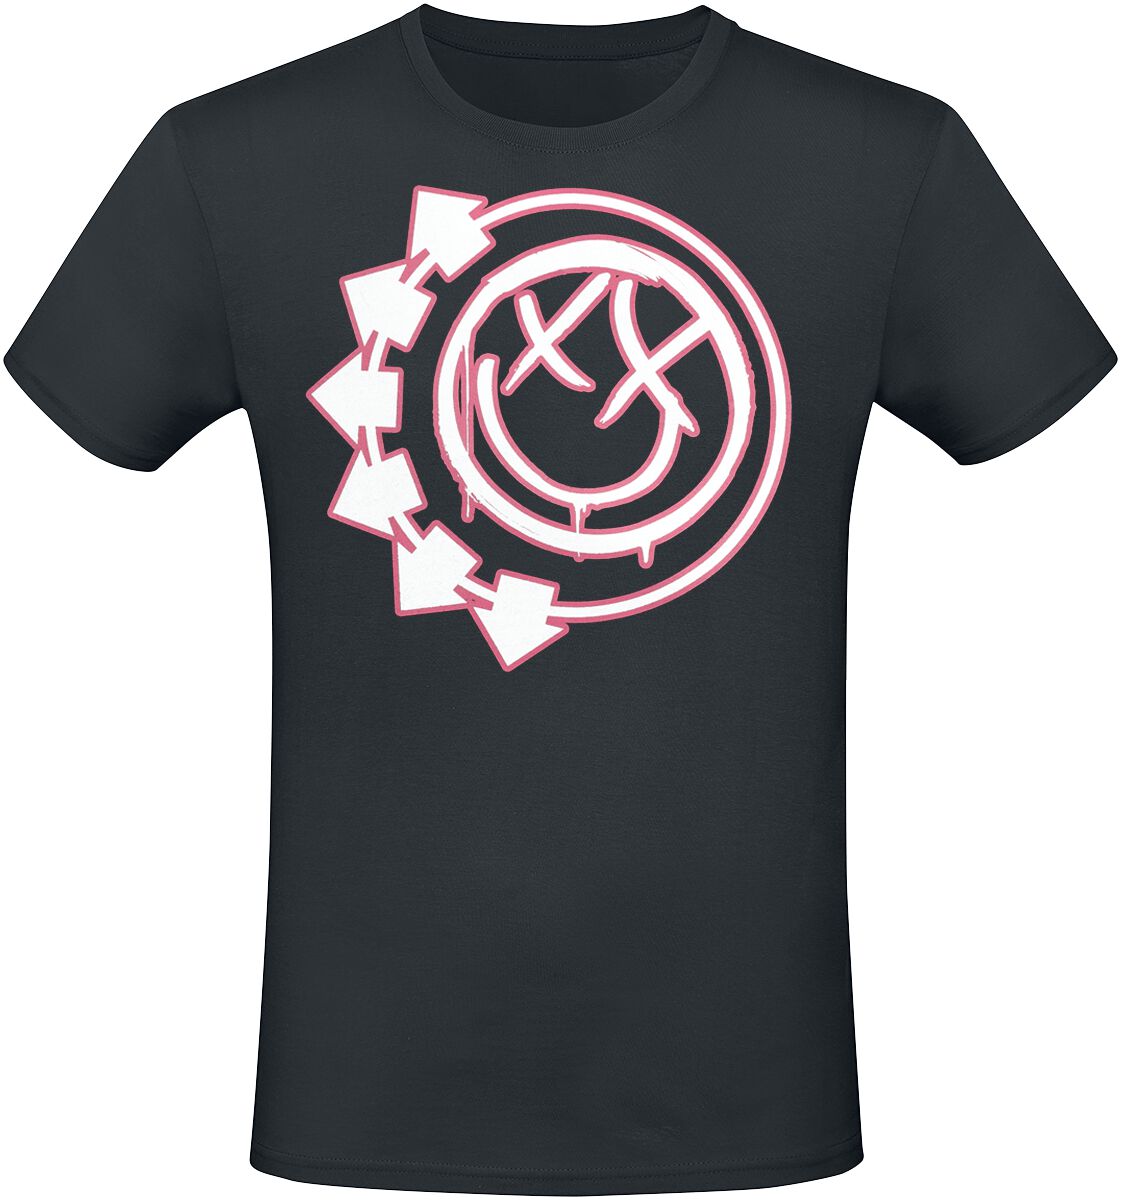 Blink-182 T-Shirt - Harrows Smiley - S bis 3XL - für Männer - Größe XL - schwarz  - Lizenziertes Merchandise!